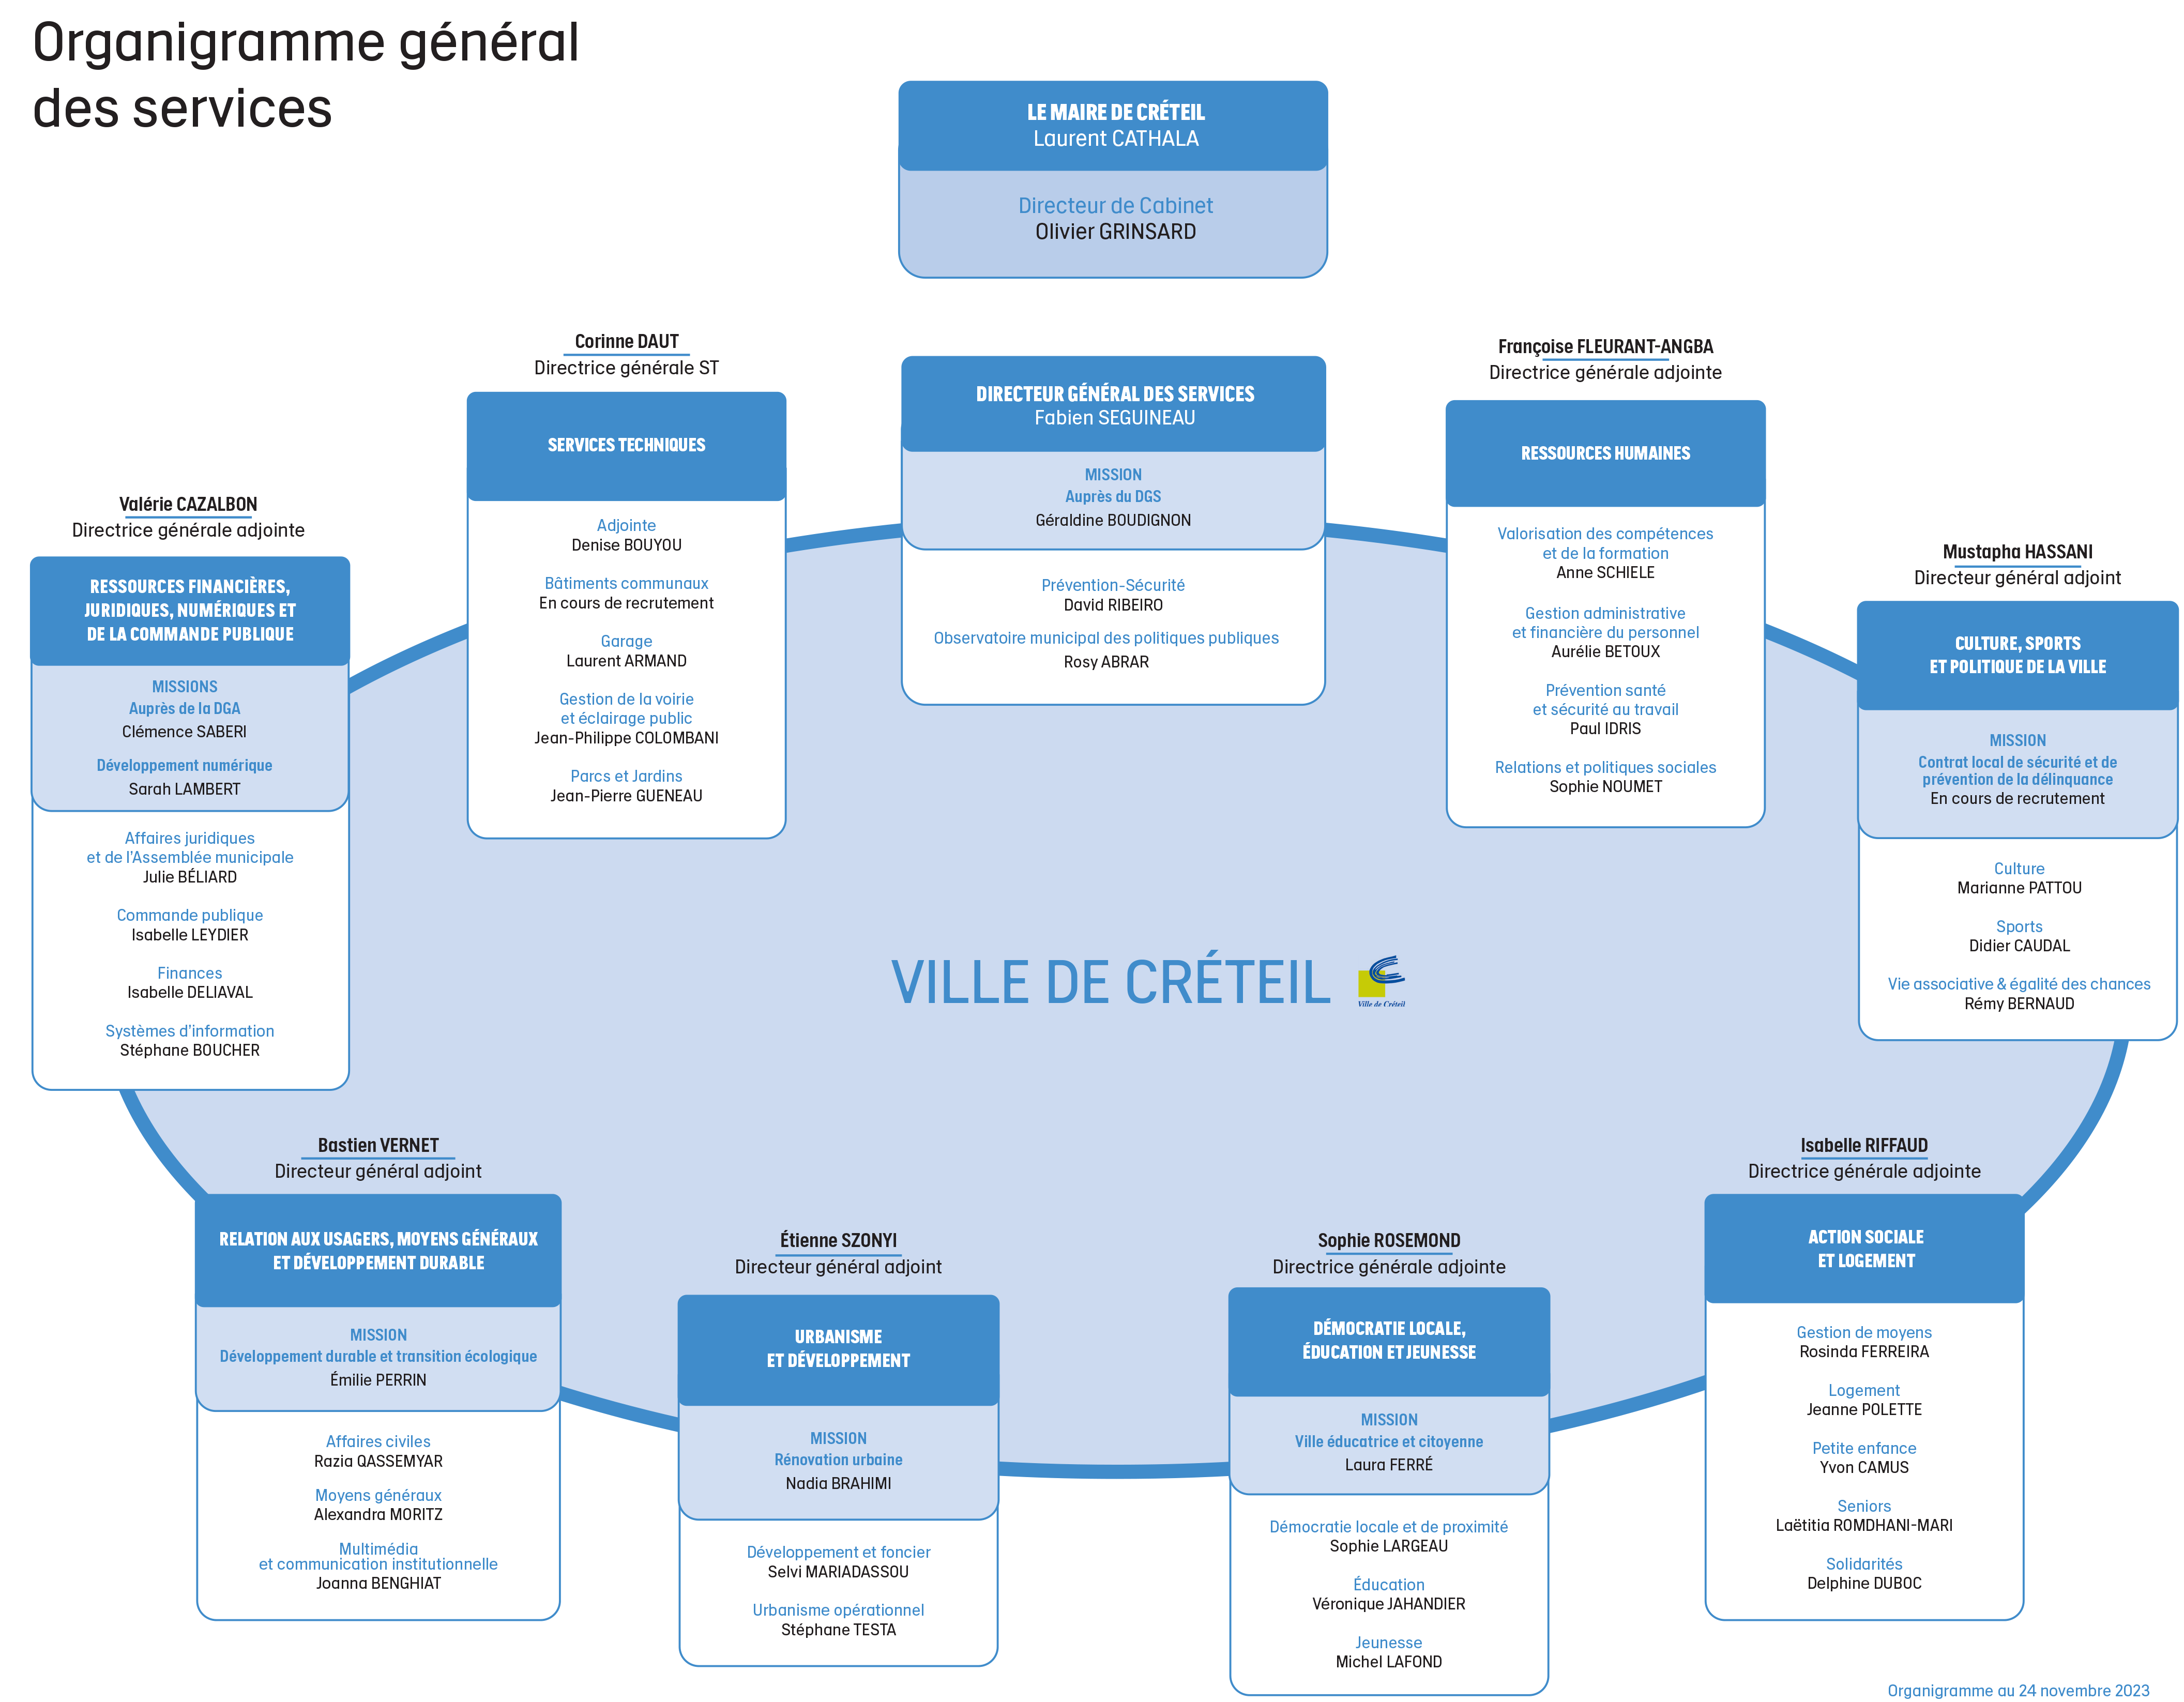 Organigramme général des services de la Ville de Créteil